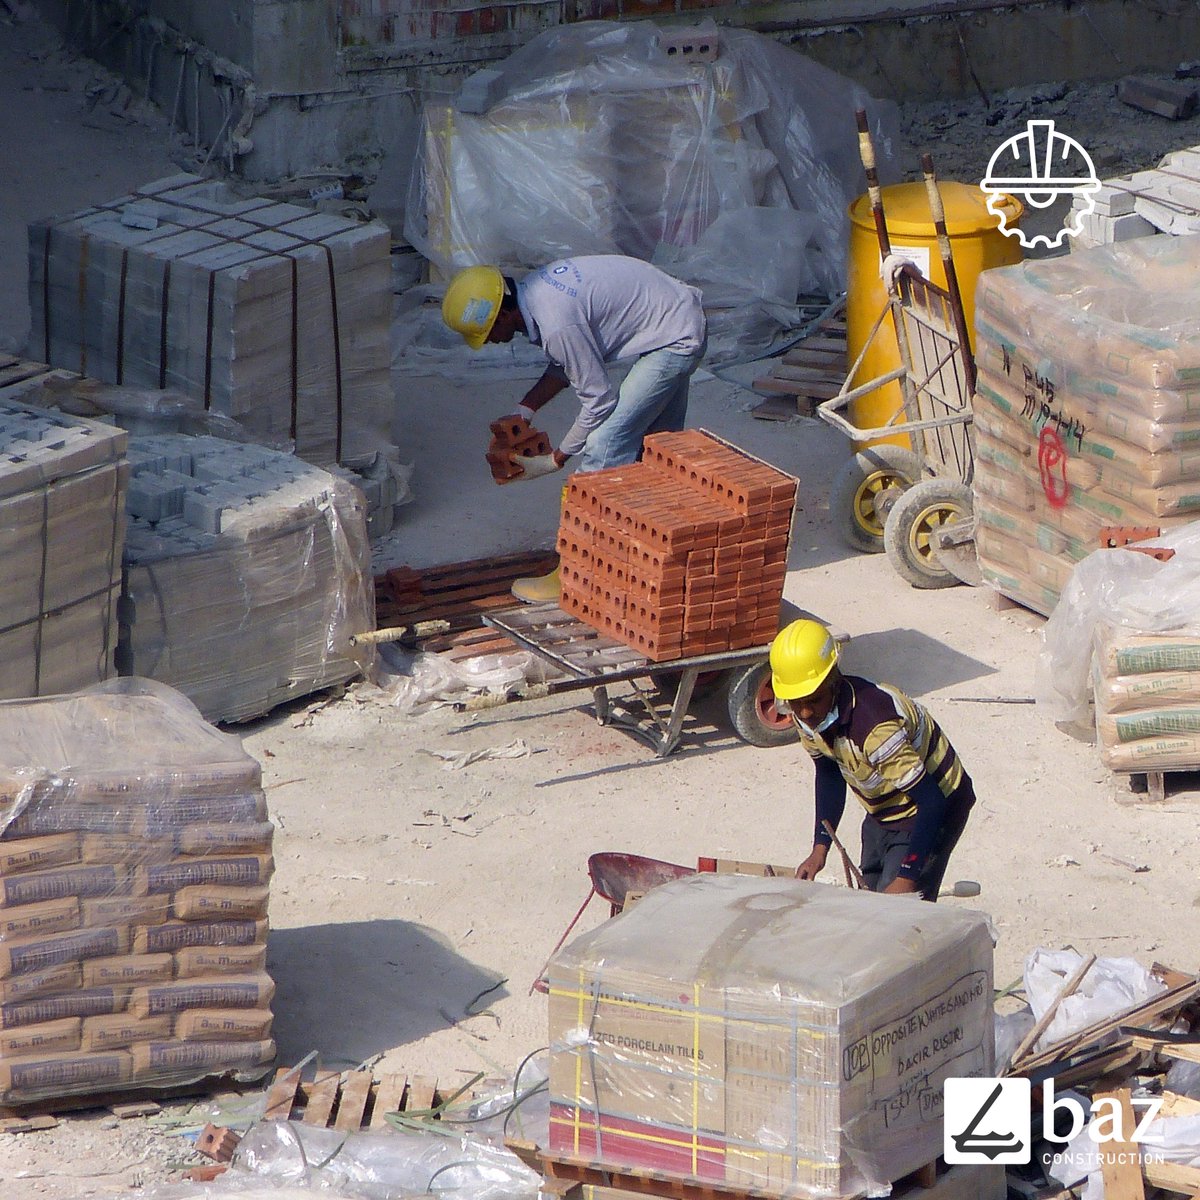 Baz Works 🚧

#BazConstruction #BazAcademy #CivilEngineering #build #construction #ConstructionTechnology #ConstructionTrends #inşaat #inşaatsektörü #inşaatmühendisi #architecture